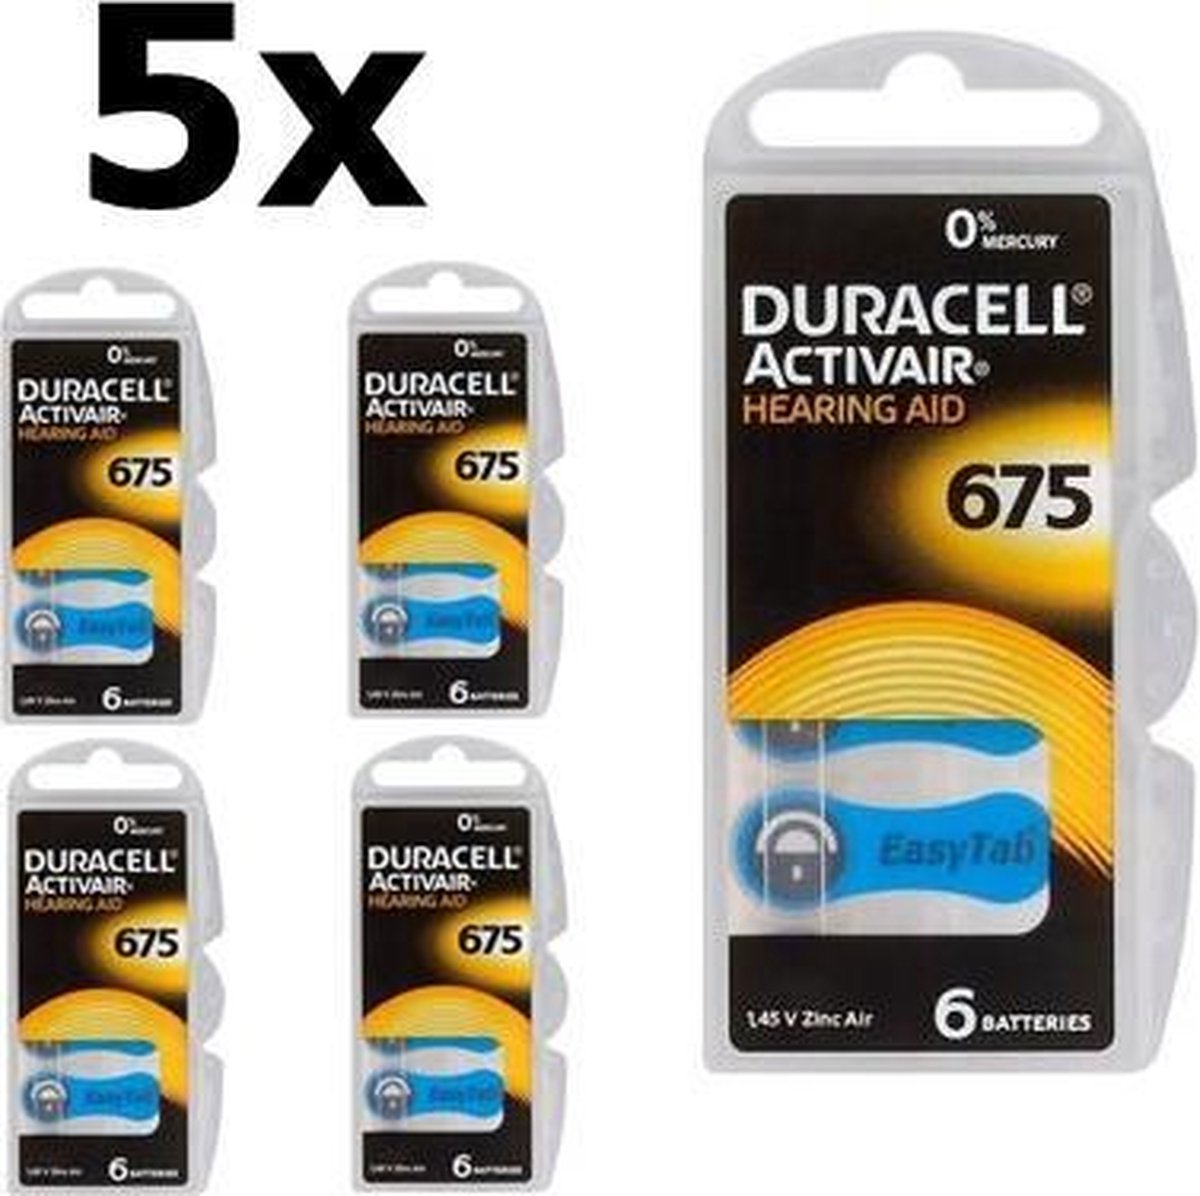 30 Stuks (5 Blisters a 6st) - Duracell ActivAir 675 MF Hg 0% gehoorapparaat batterij 650mAh 1.45V